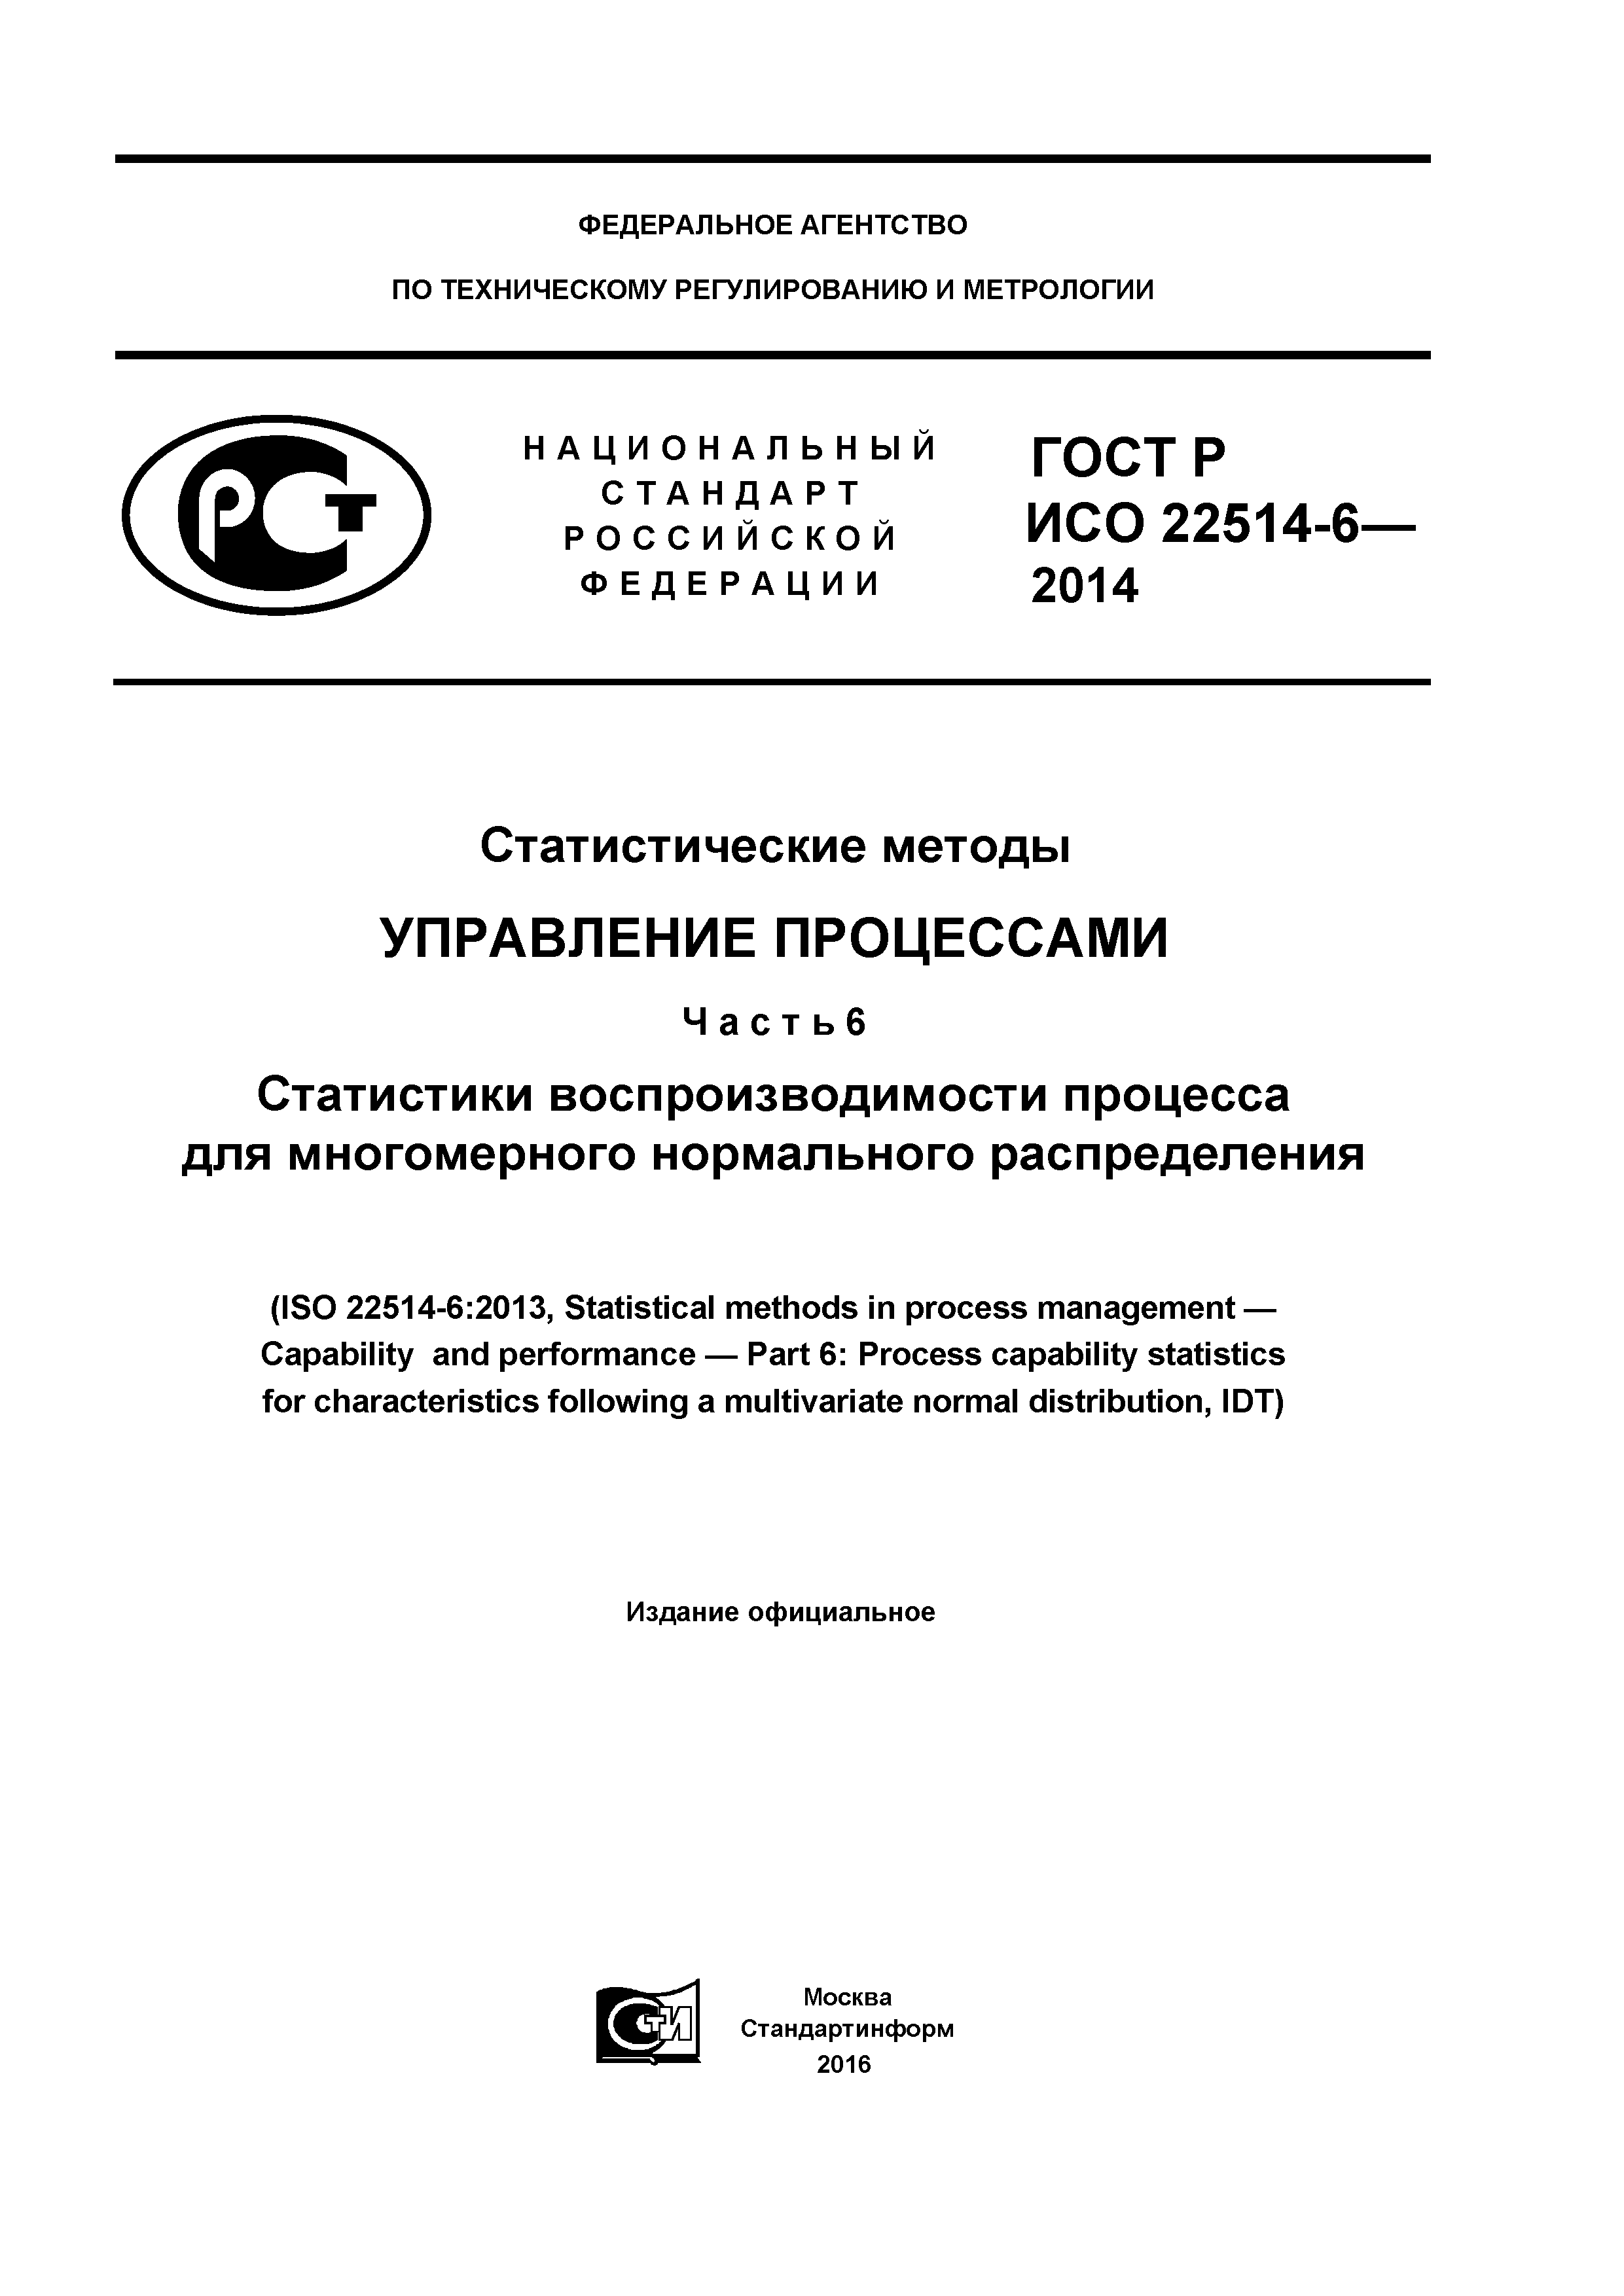 ГОСТ Р ИСО 22514-6-2014